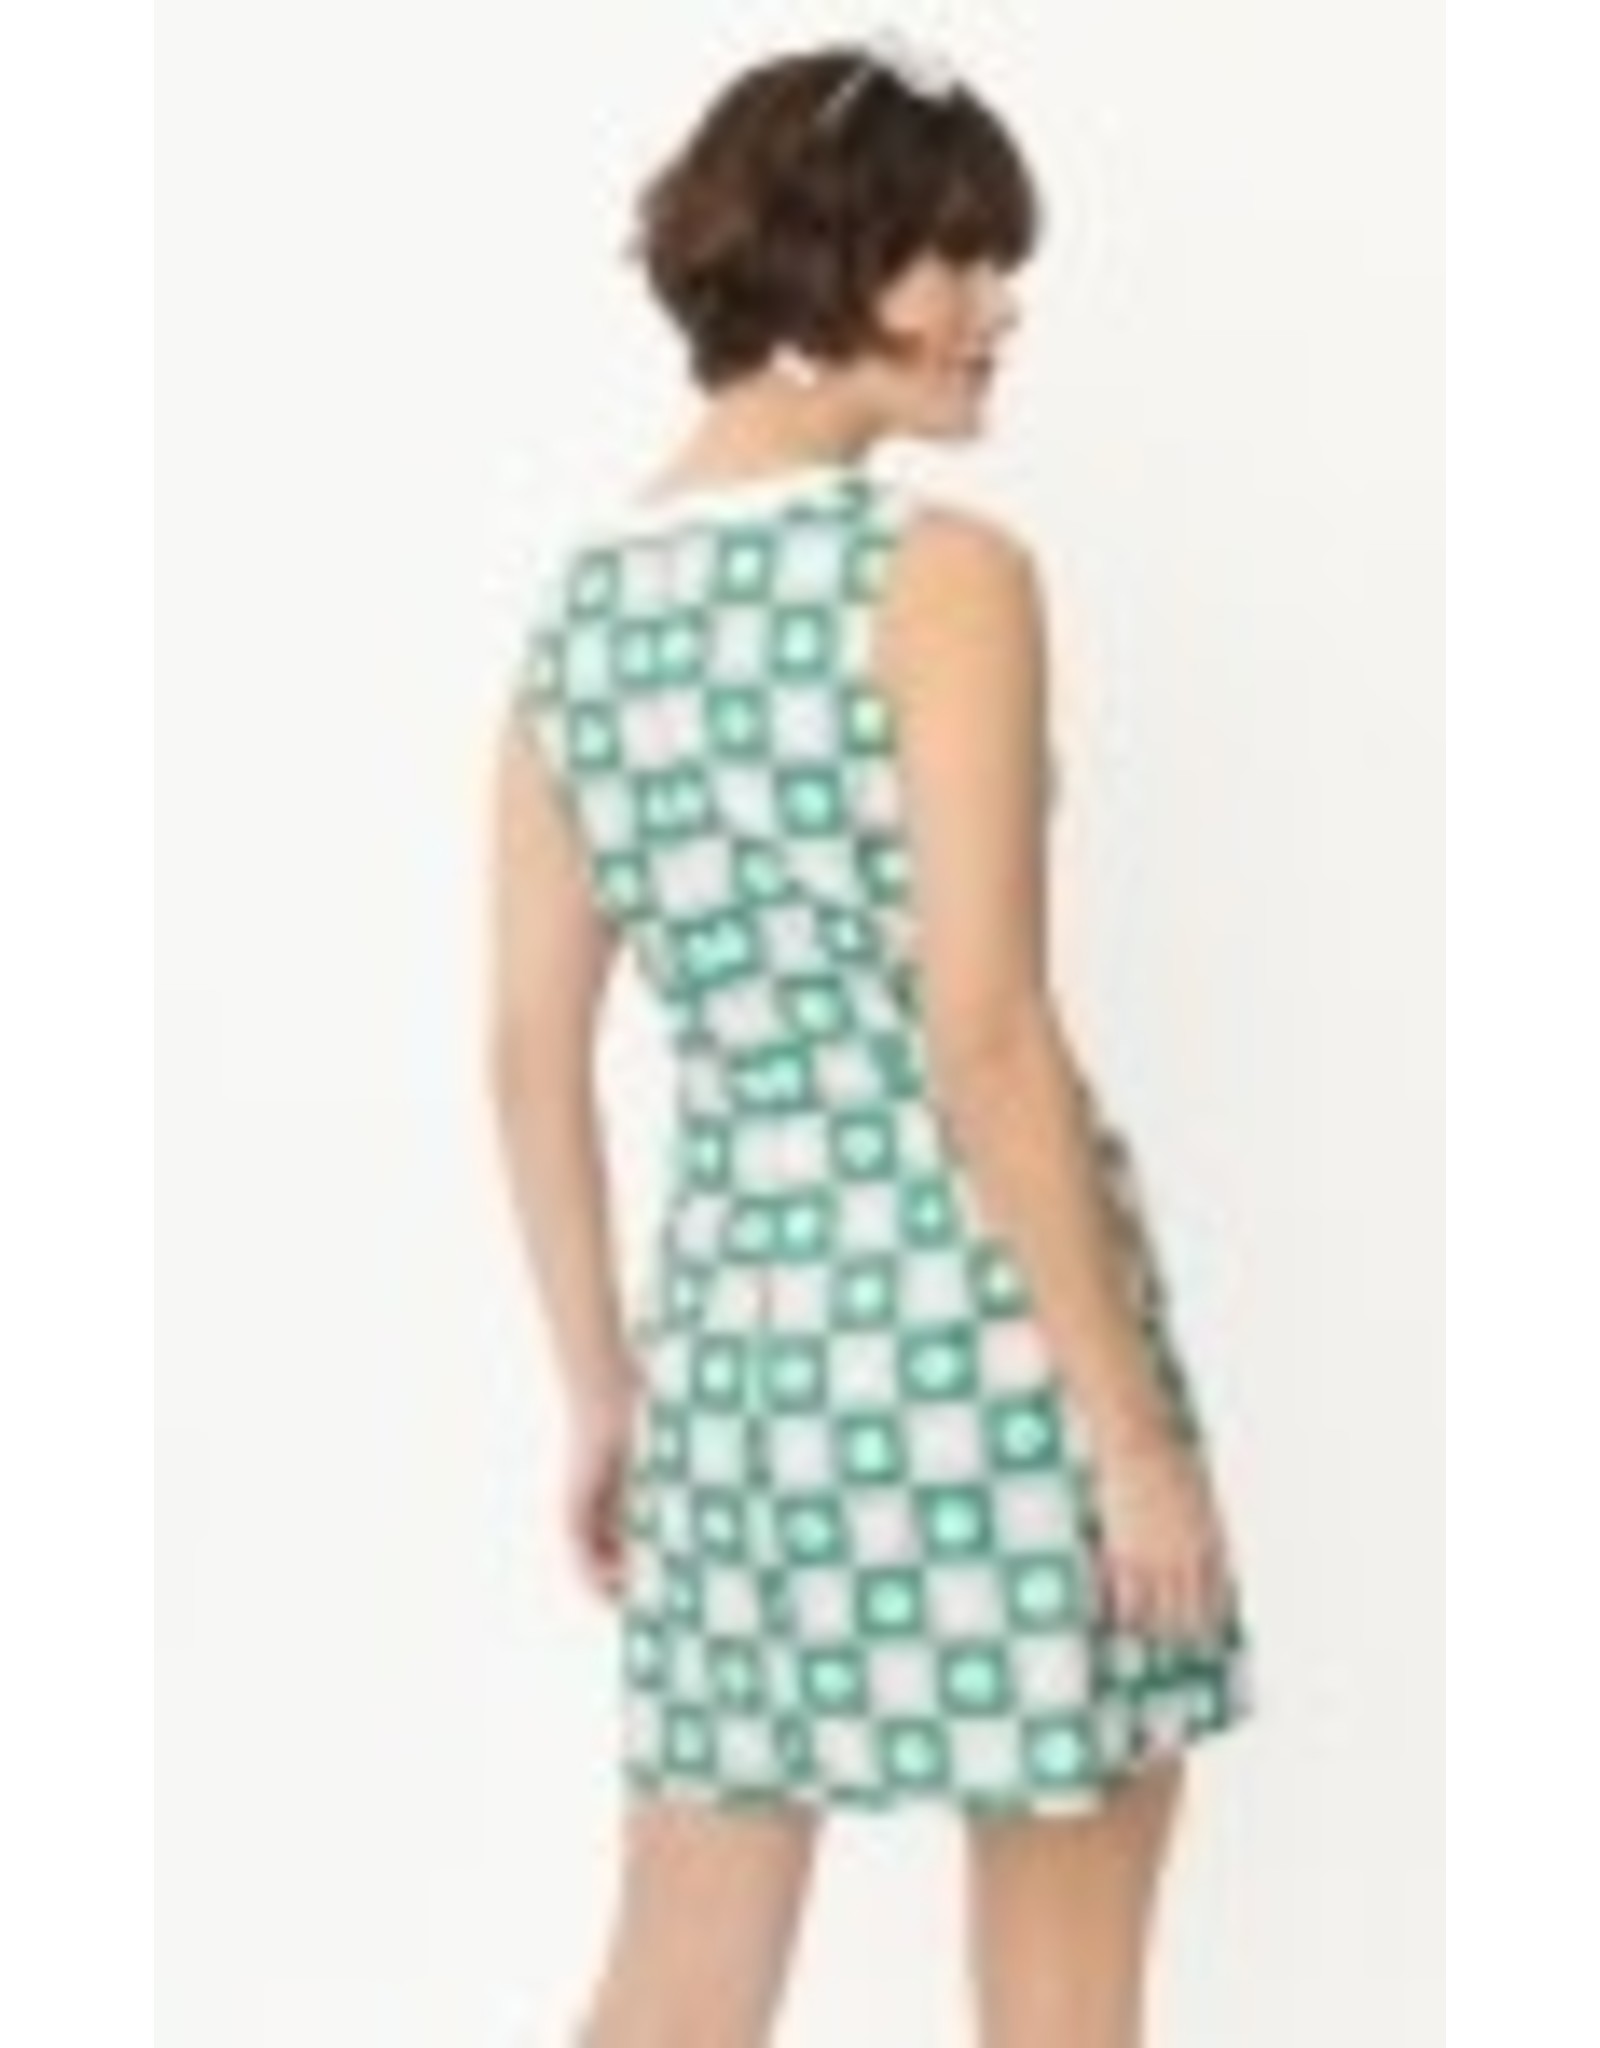 Smak Parlour Green & Pink Daisy Checker Board Print Dress